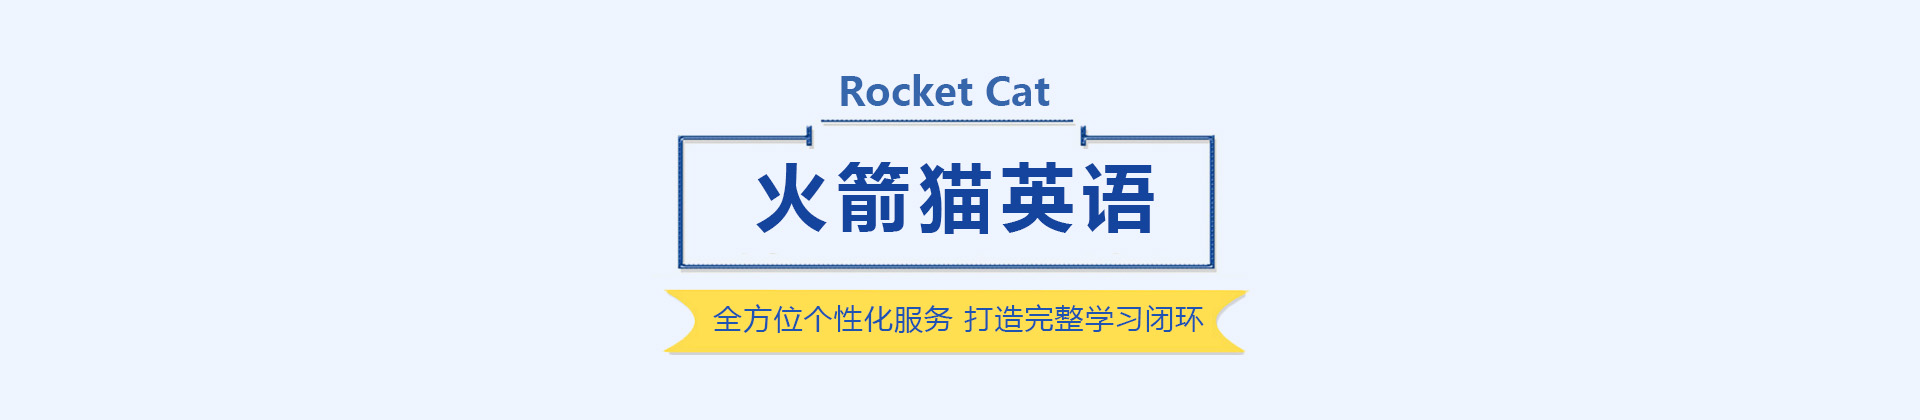 沈阳火箭猫英语